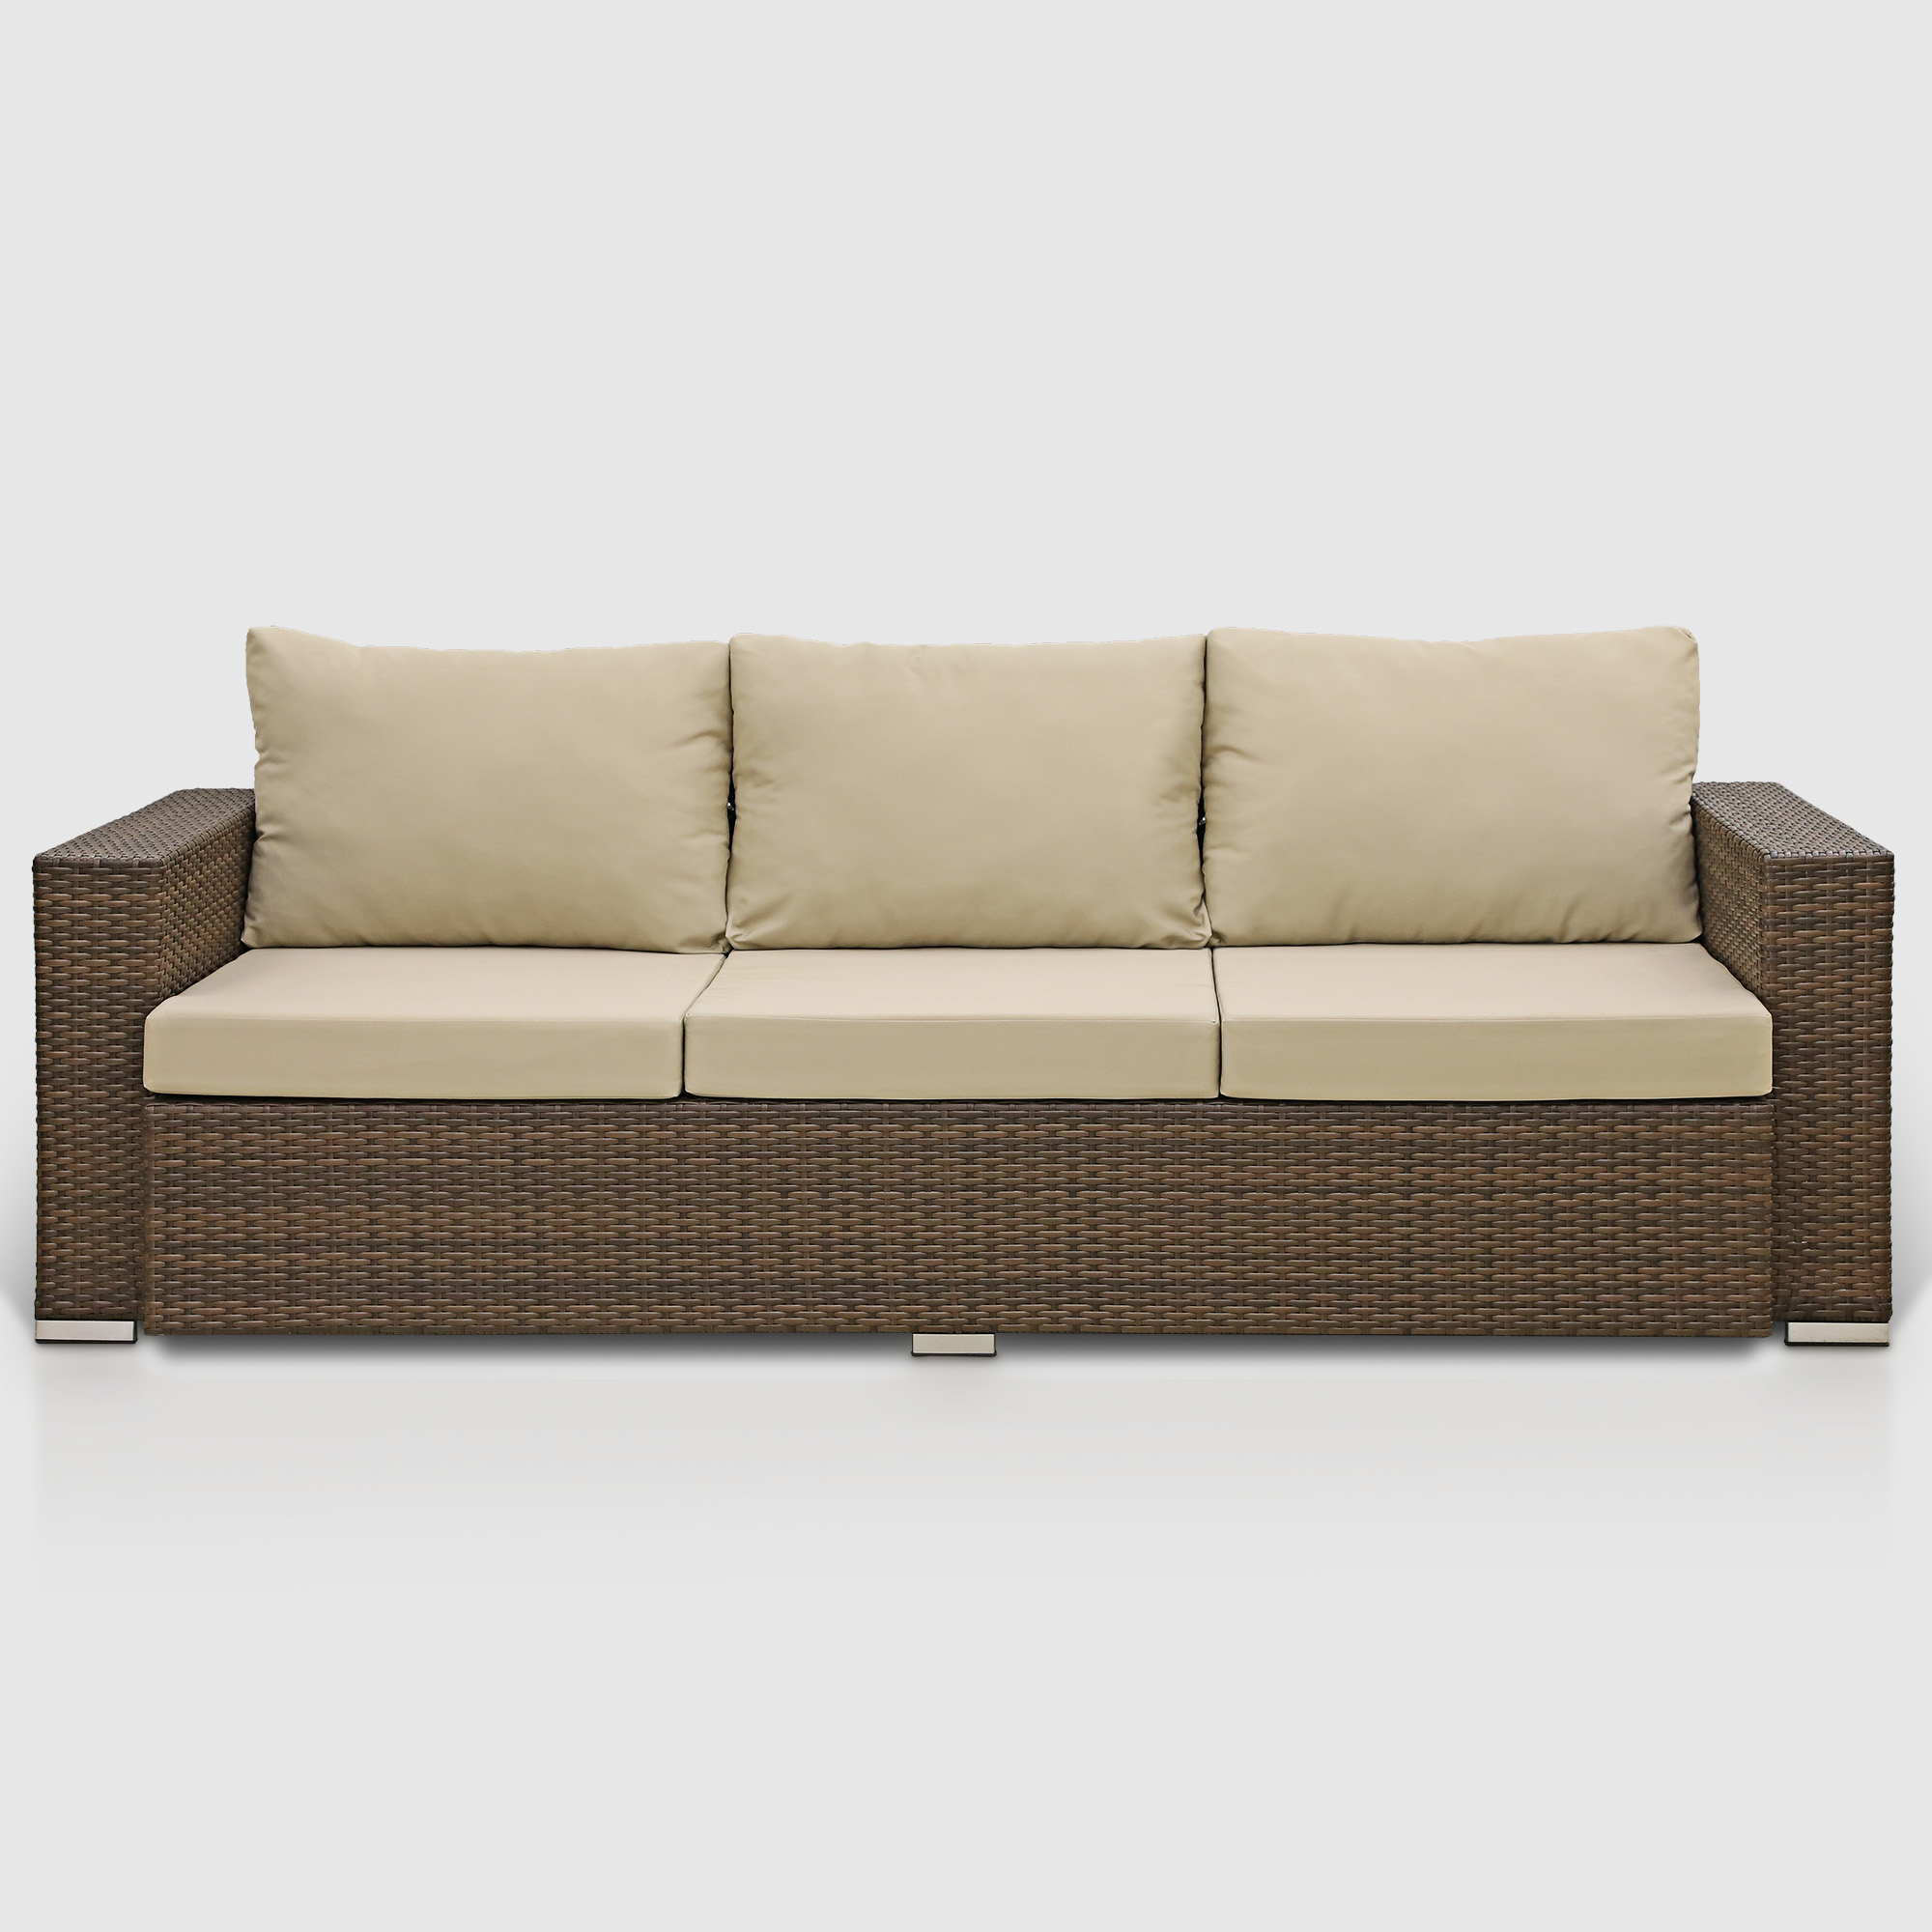 Комплект мебели Ns Rattan Cleo коричнево-бежевый 7 предметов, цвет коричневый, размер 199х68х72 - фото 3